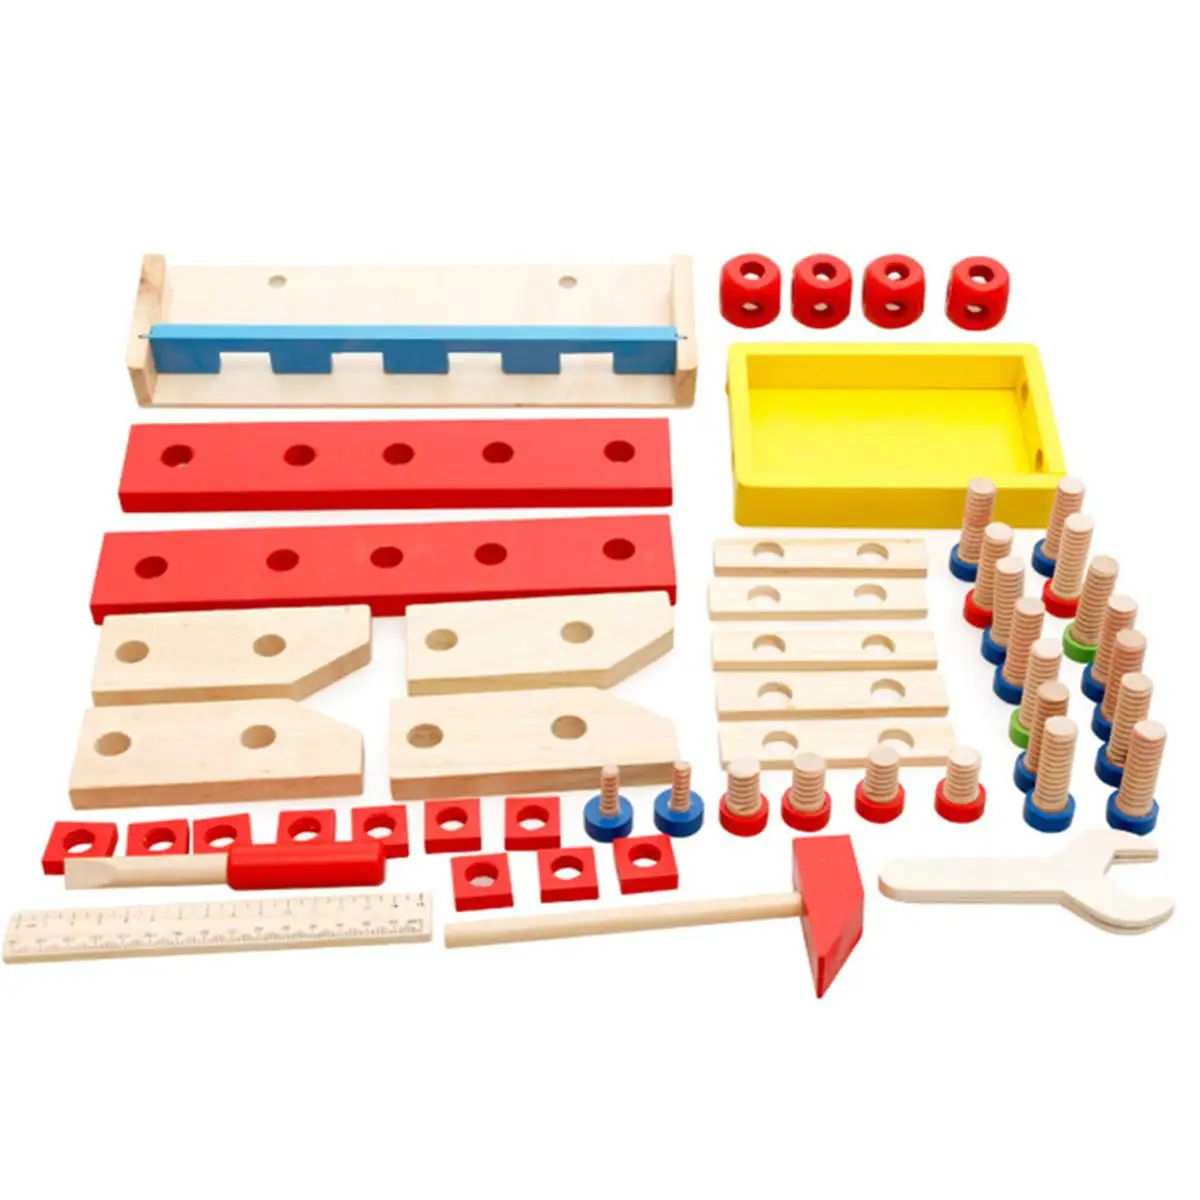 Деревянная установка Инженерная игрушка детский набор инструментов для игры винт деревянная работа для скамейки ролевые игры инструменты Развивающие игрушки для мальчиков и девочек